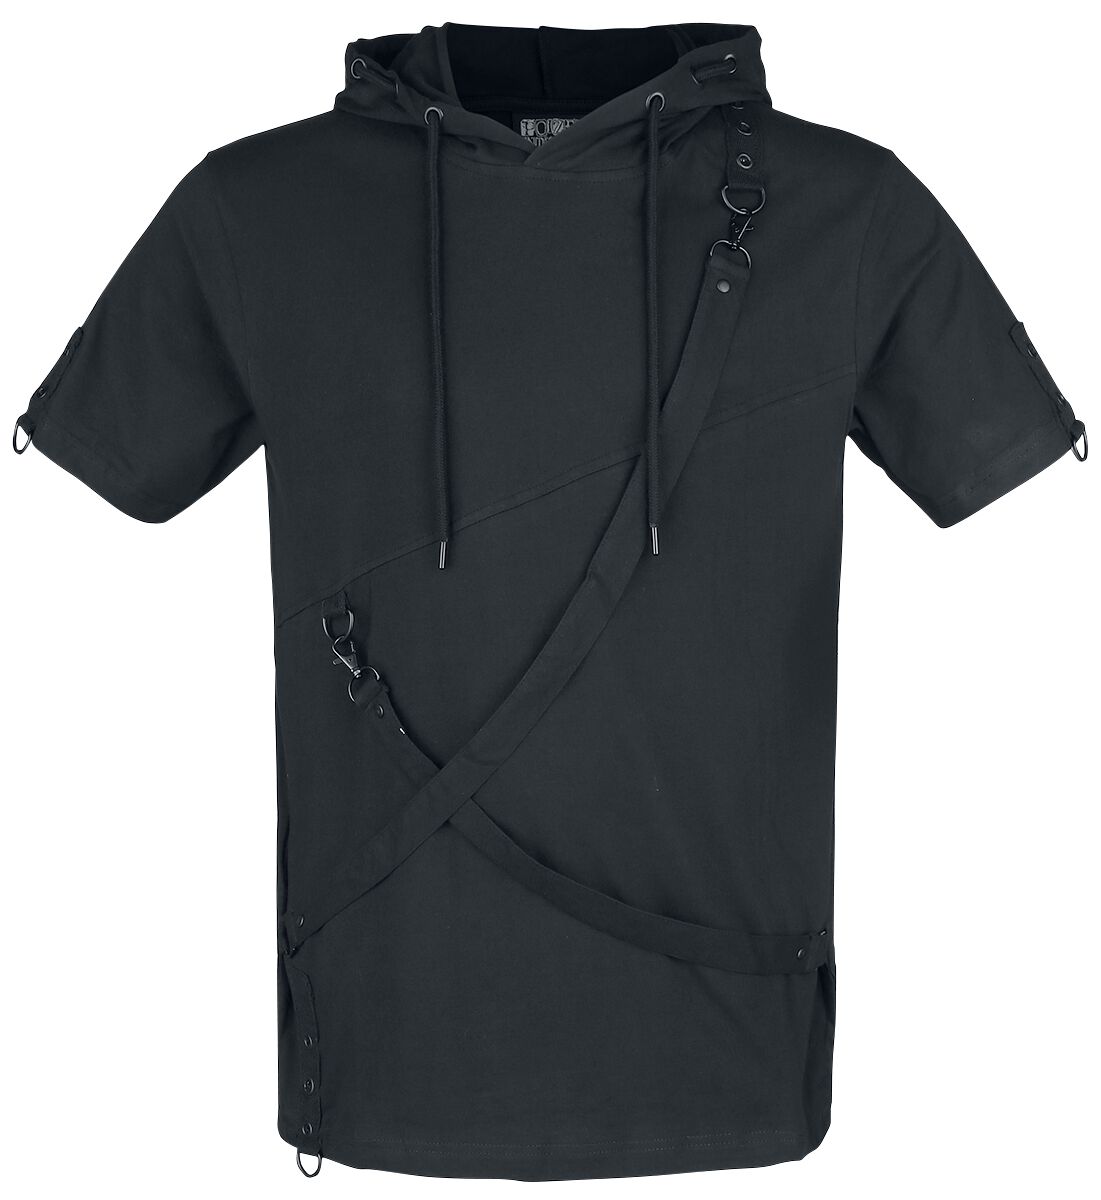 Poizen Industries - Gothic T-Shirt - Lucius Top - S bis XL - für Männer - Größe L - schwarz